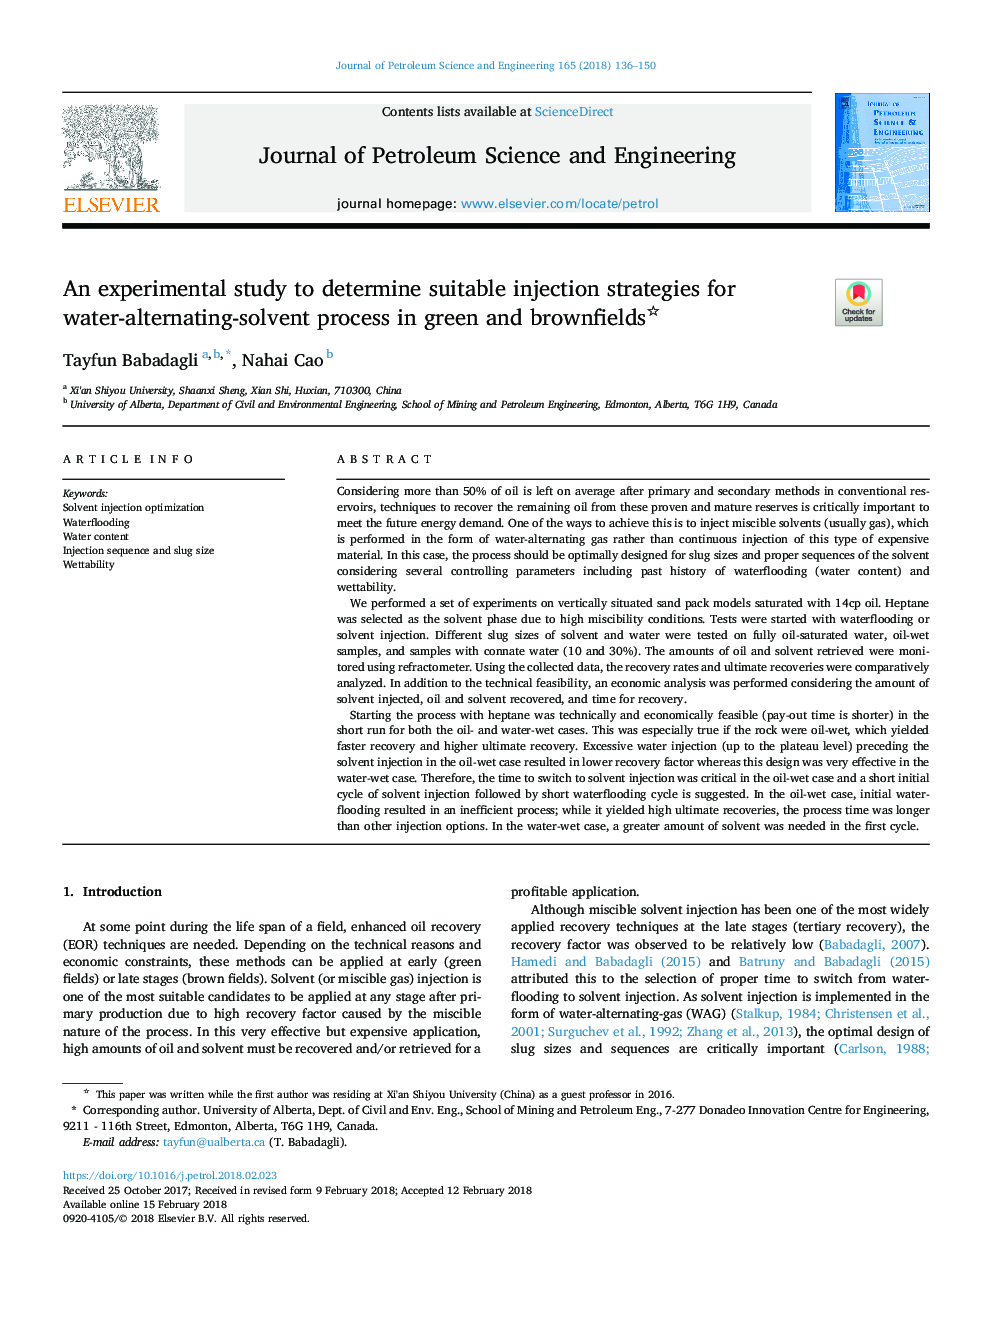 یک مطالعه تجربی برای تعیین استراتژی مناسب تزریق برای فرآیند متابولیسم آب در فضای سبز و قهوه ای 